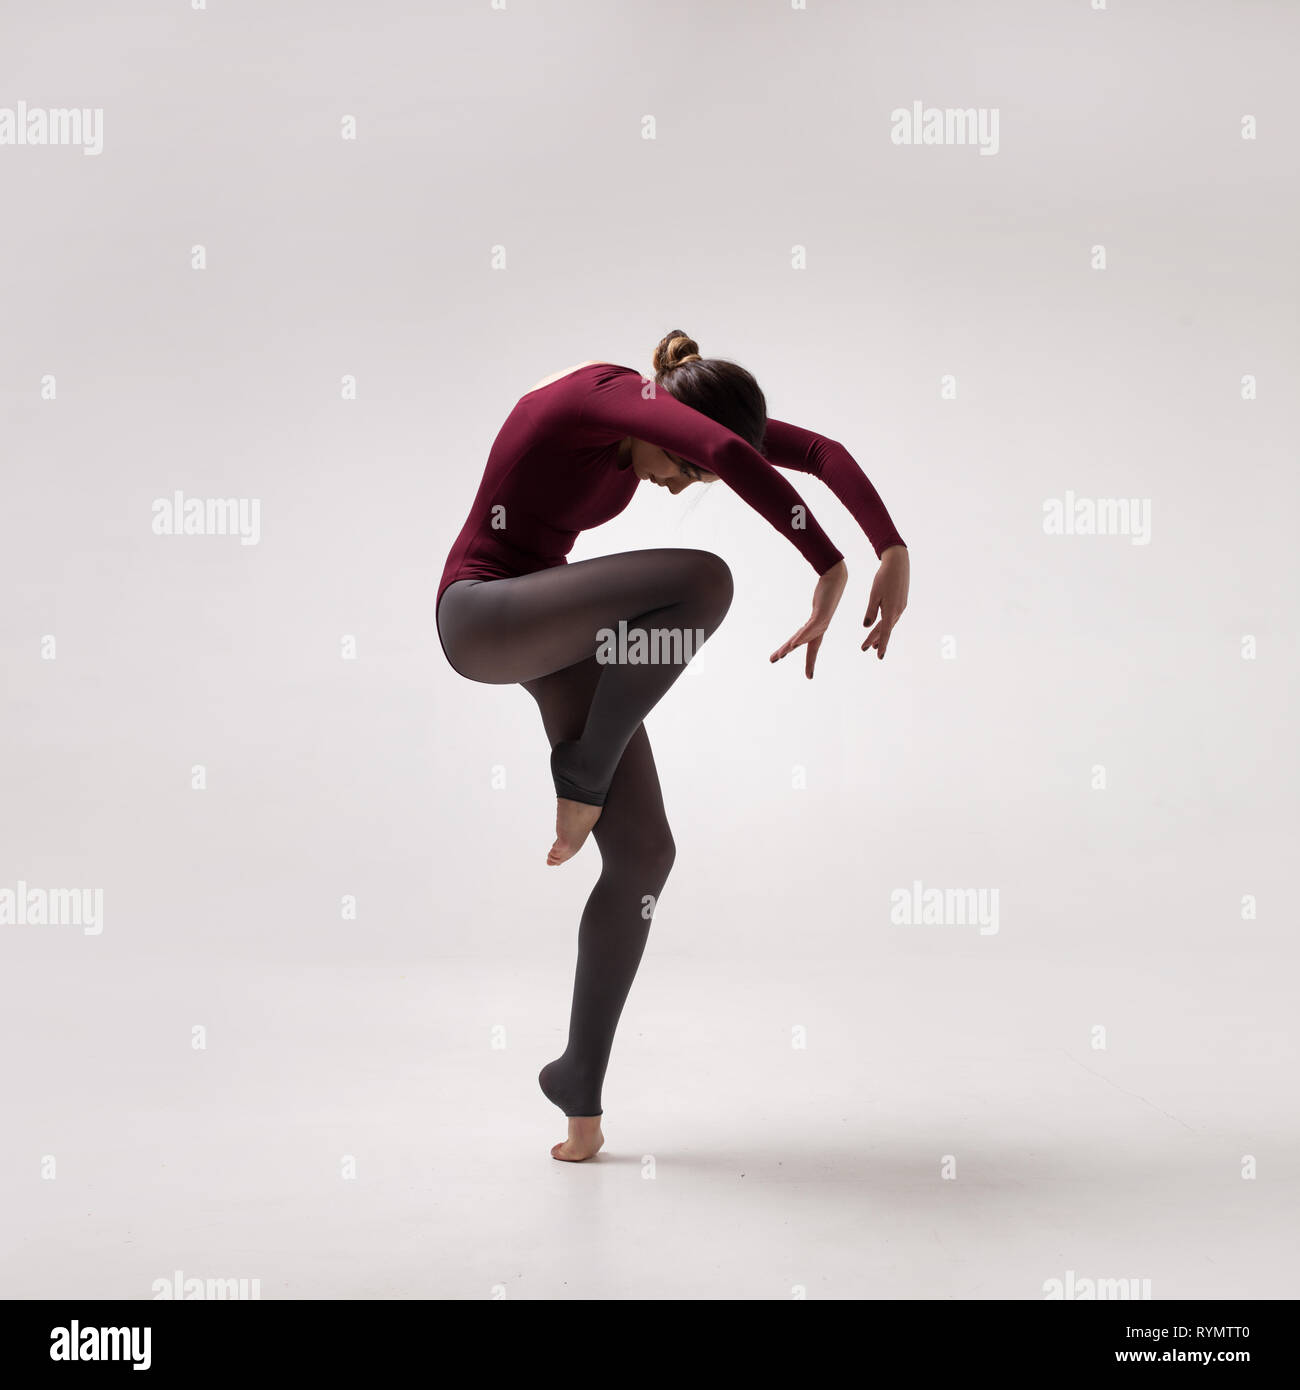 Giovane donna ballerina in costume da bagno maroon jumping Foto Stock